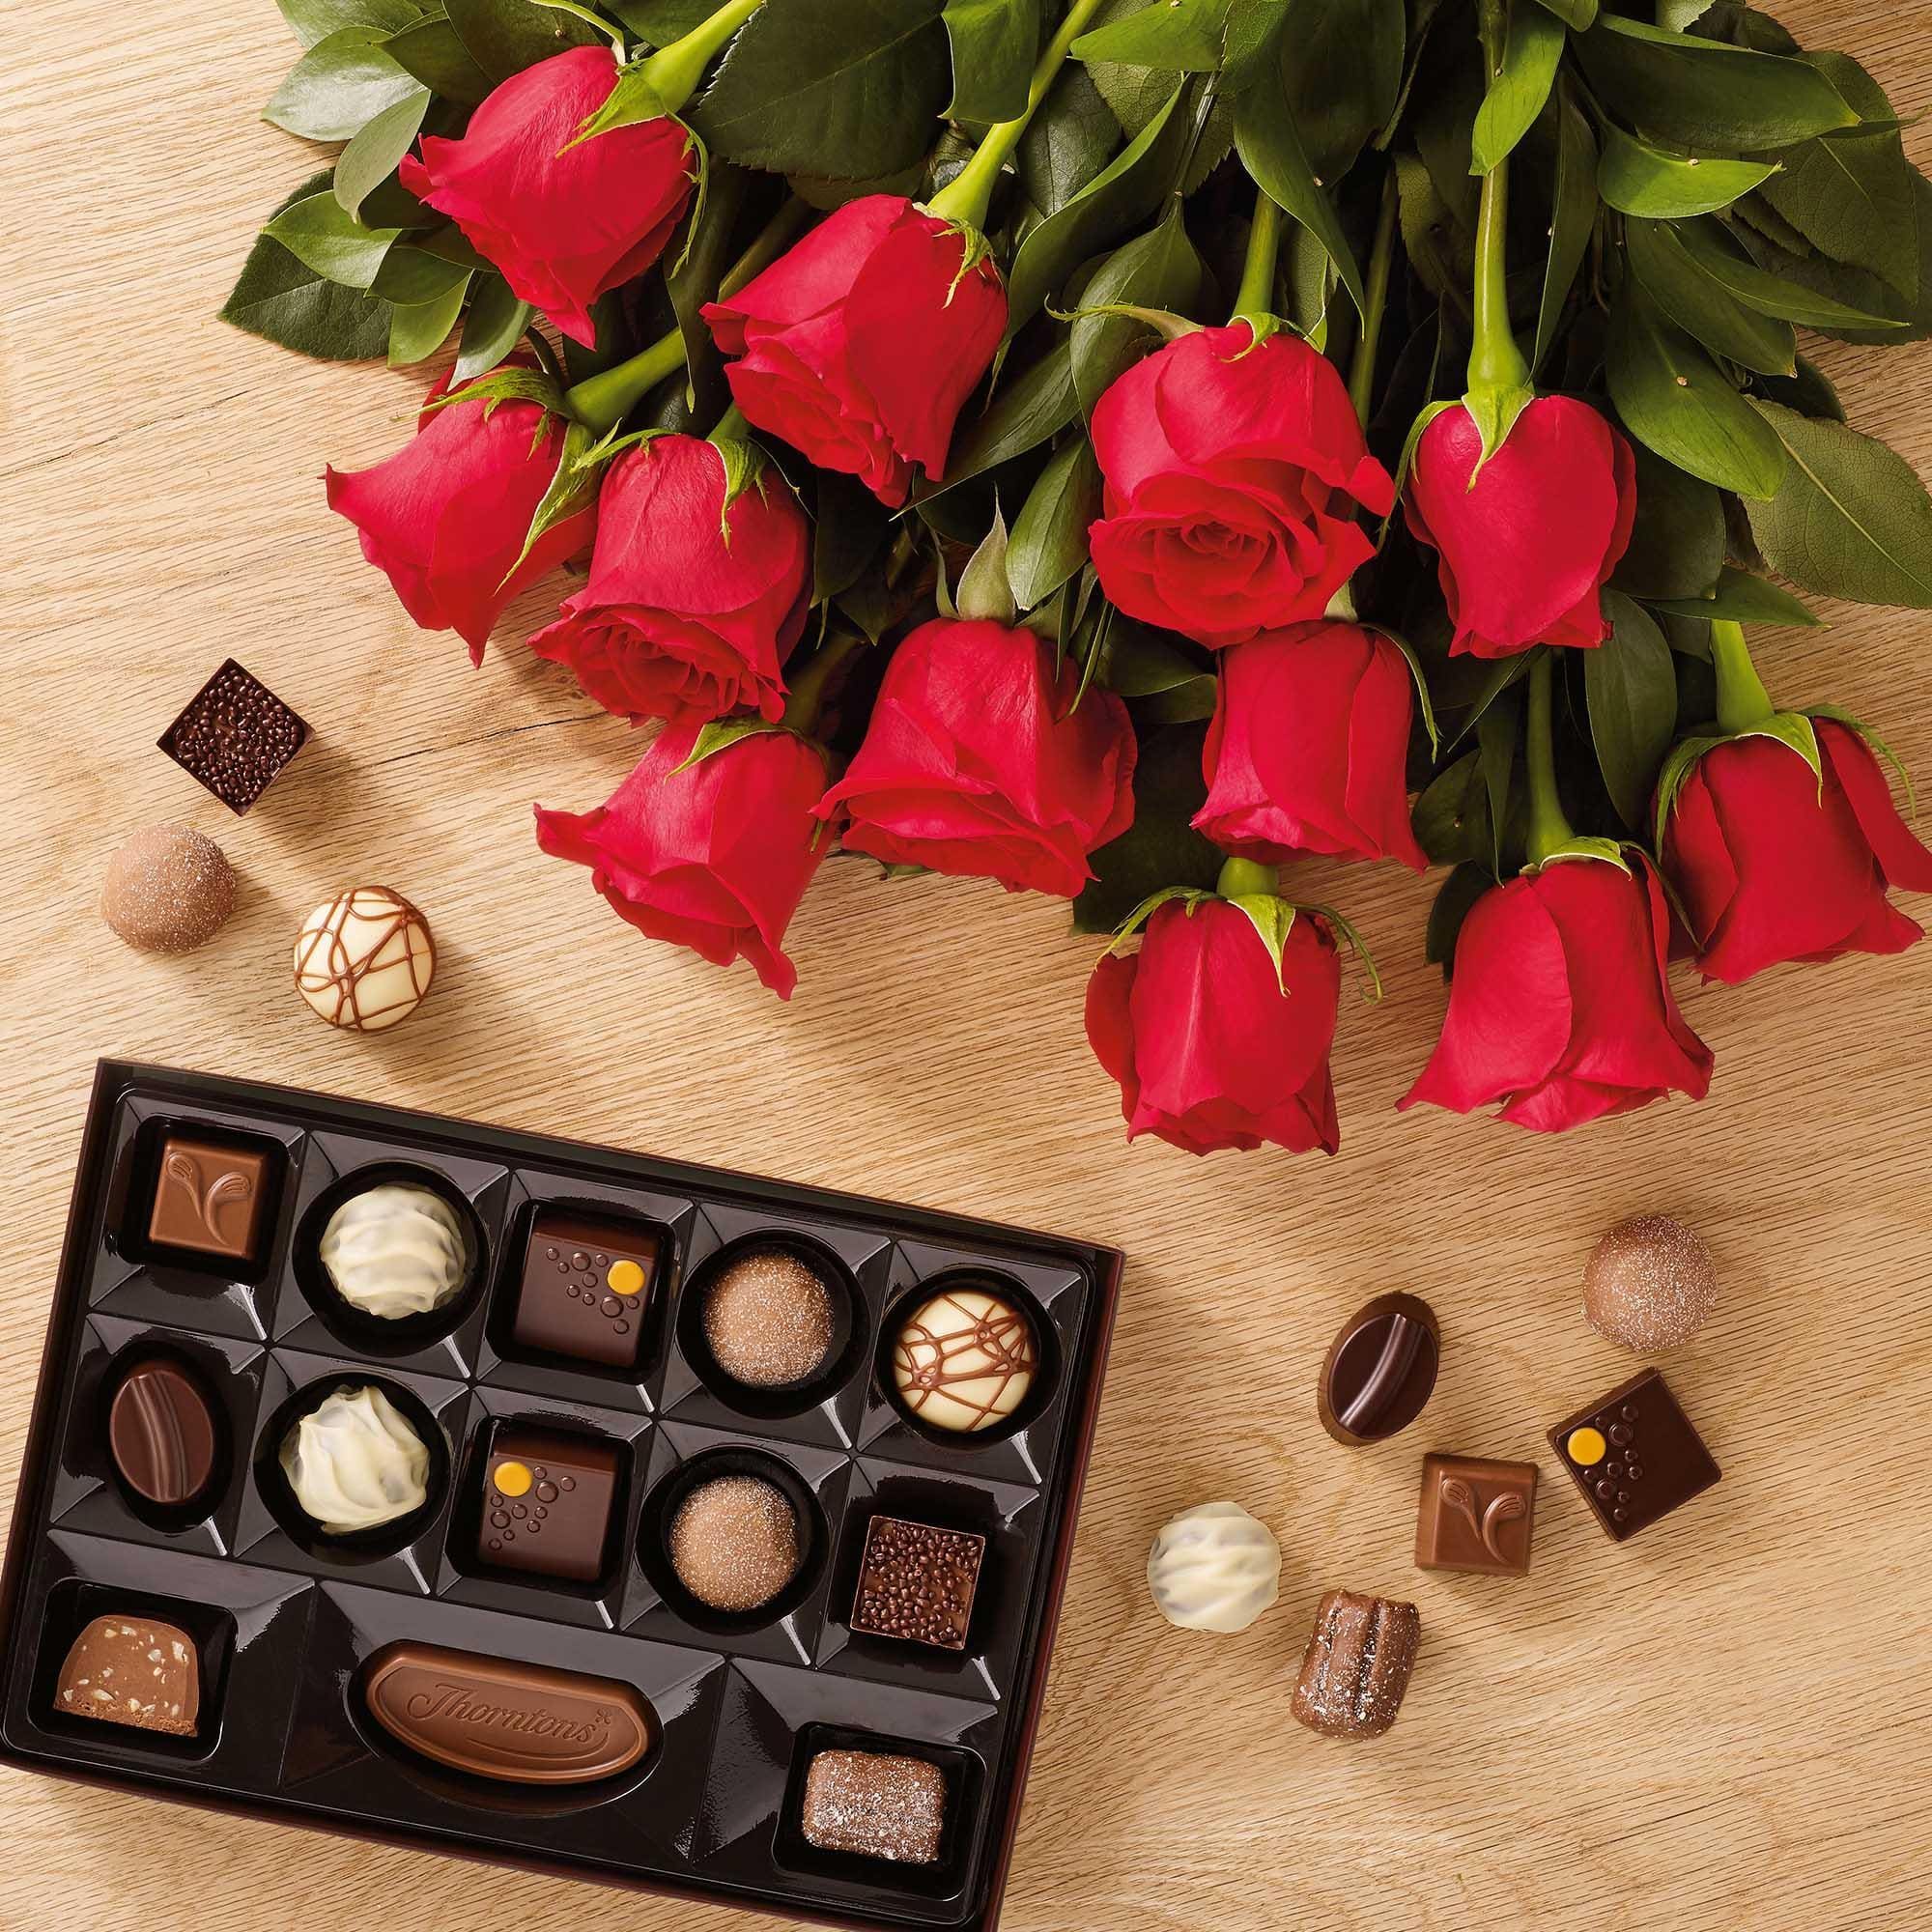 Цветы и шоколадка. Цветы с конфетами. Шоколадные конфеты и цветы. Конфеты с цветами. Шикарные цветы и конфеты.